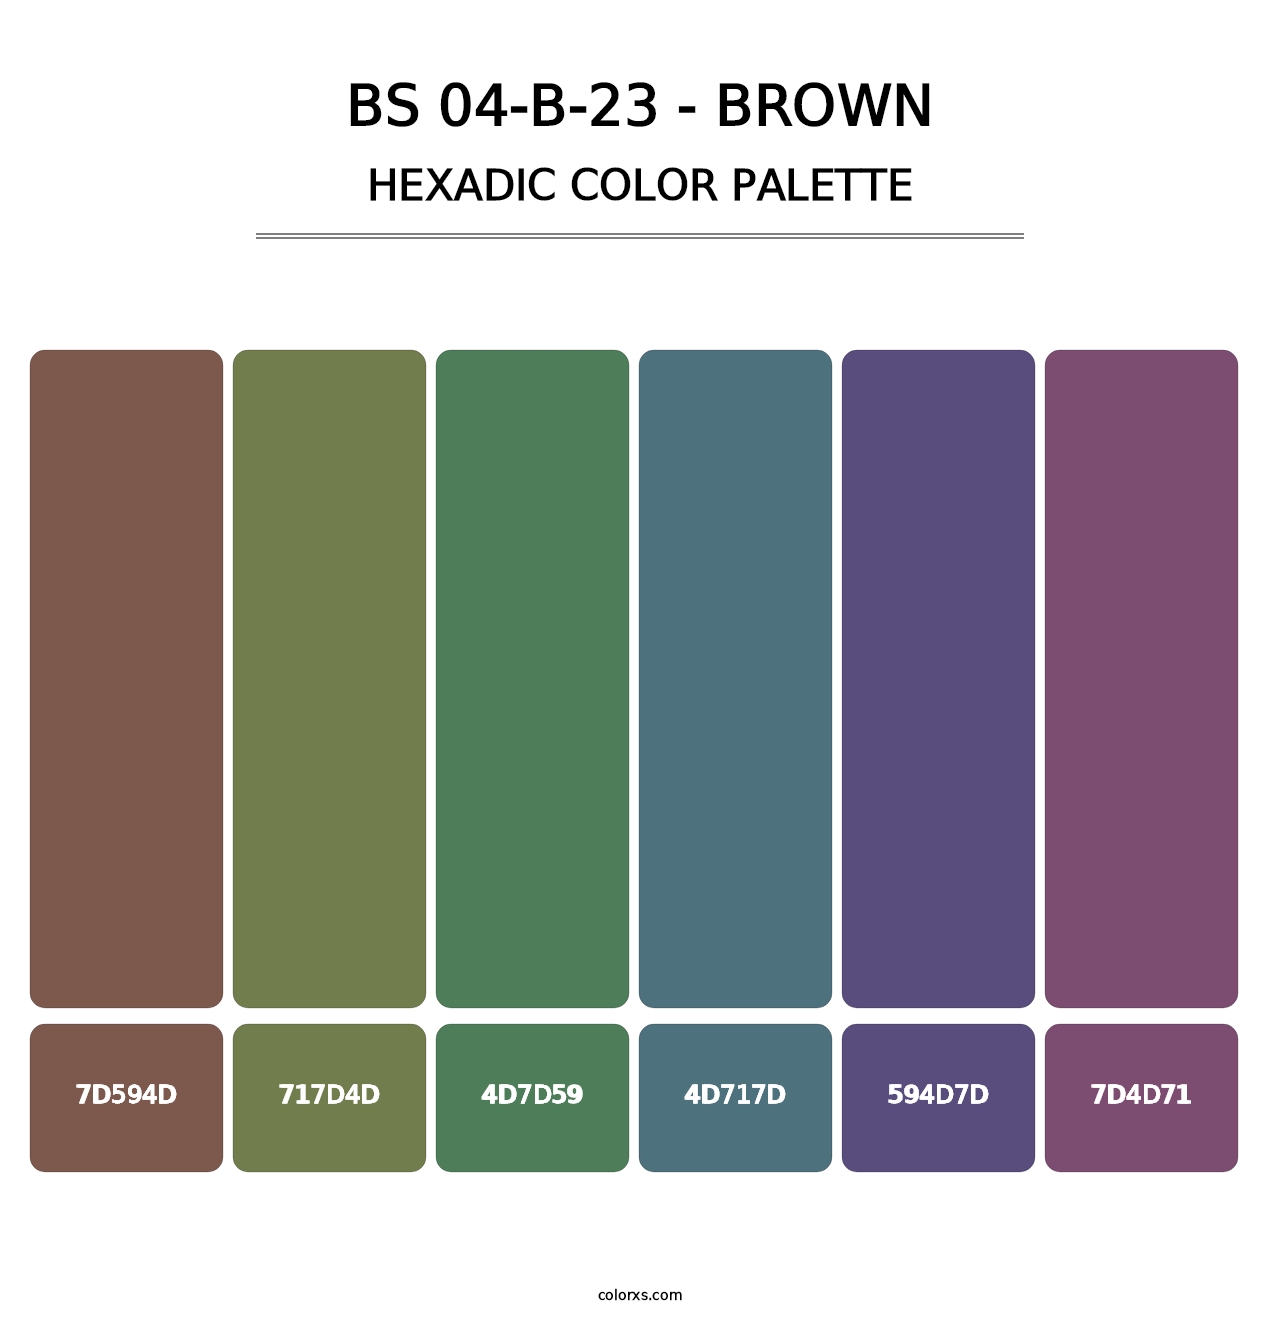 BS 04-B-23 - Brown - Hexadic Color Palette